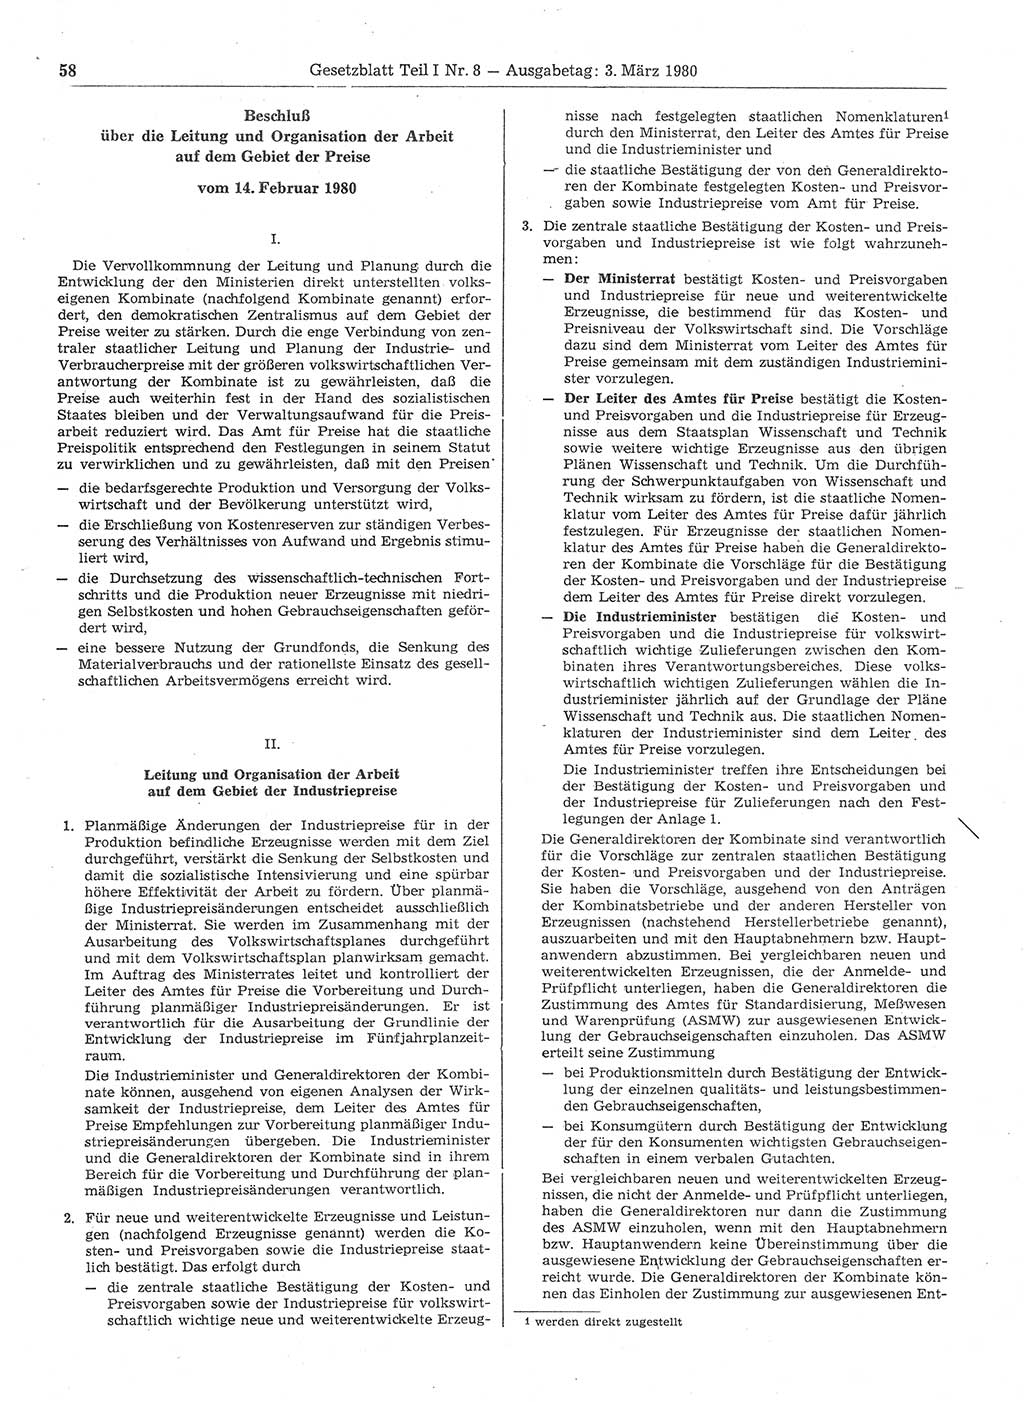 Gesetzblatt (GBl.) der Deutschen Demokratischen Republik (DDR) Teil Ⅰ 1980, Seite 58 (GBl. DDR Ⅰ 1980, S. 58)